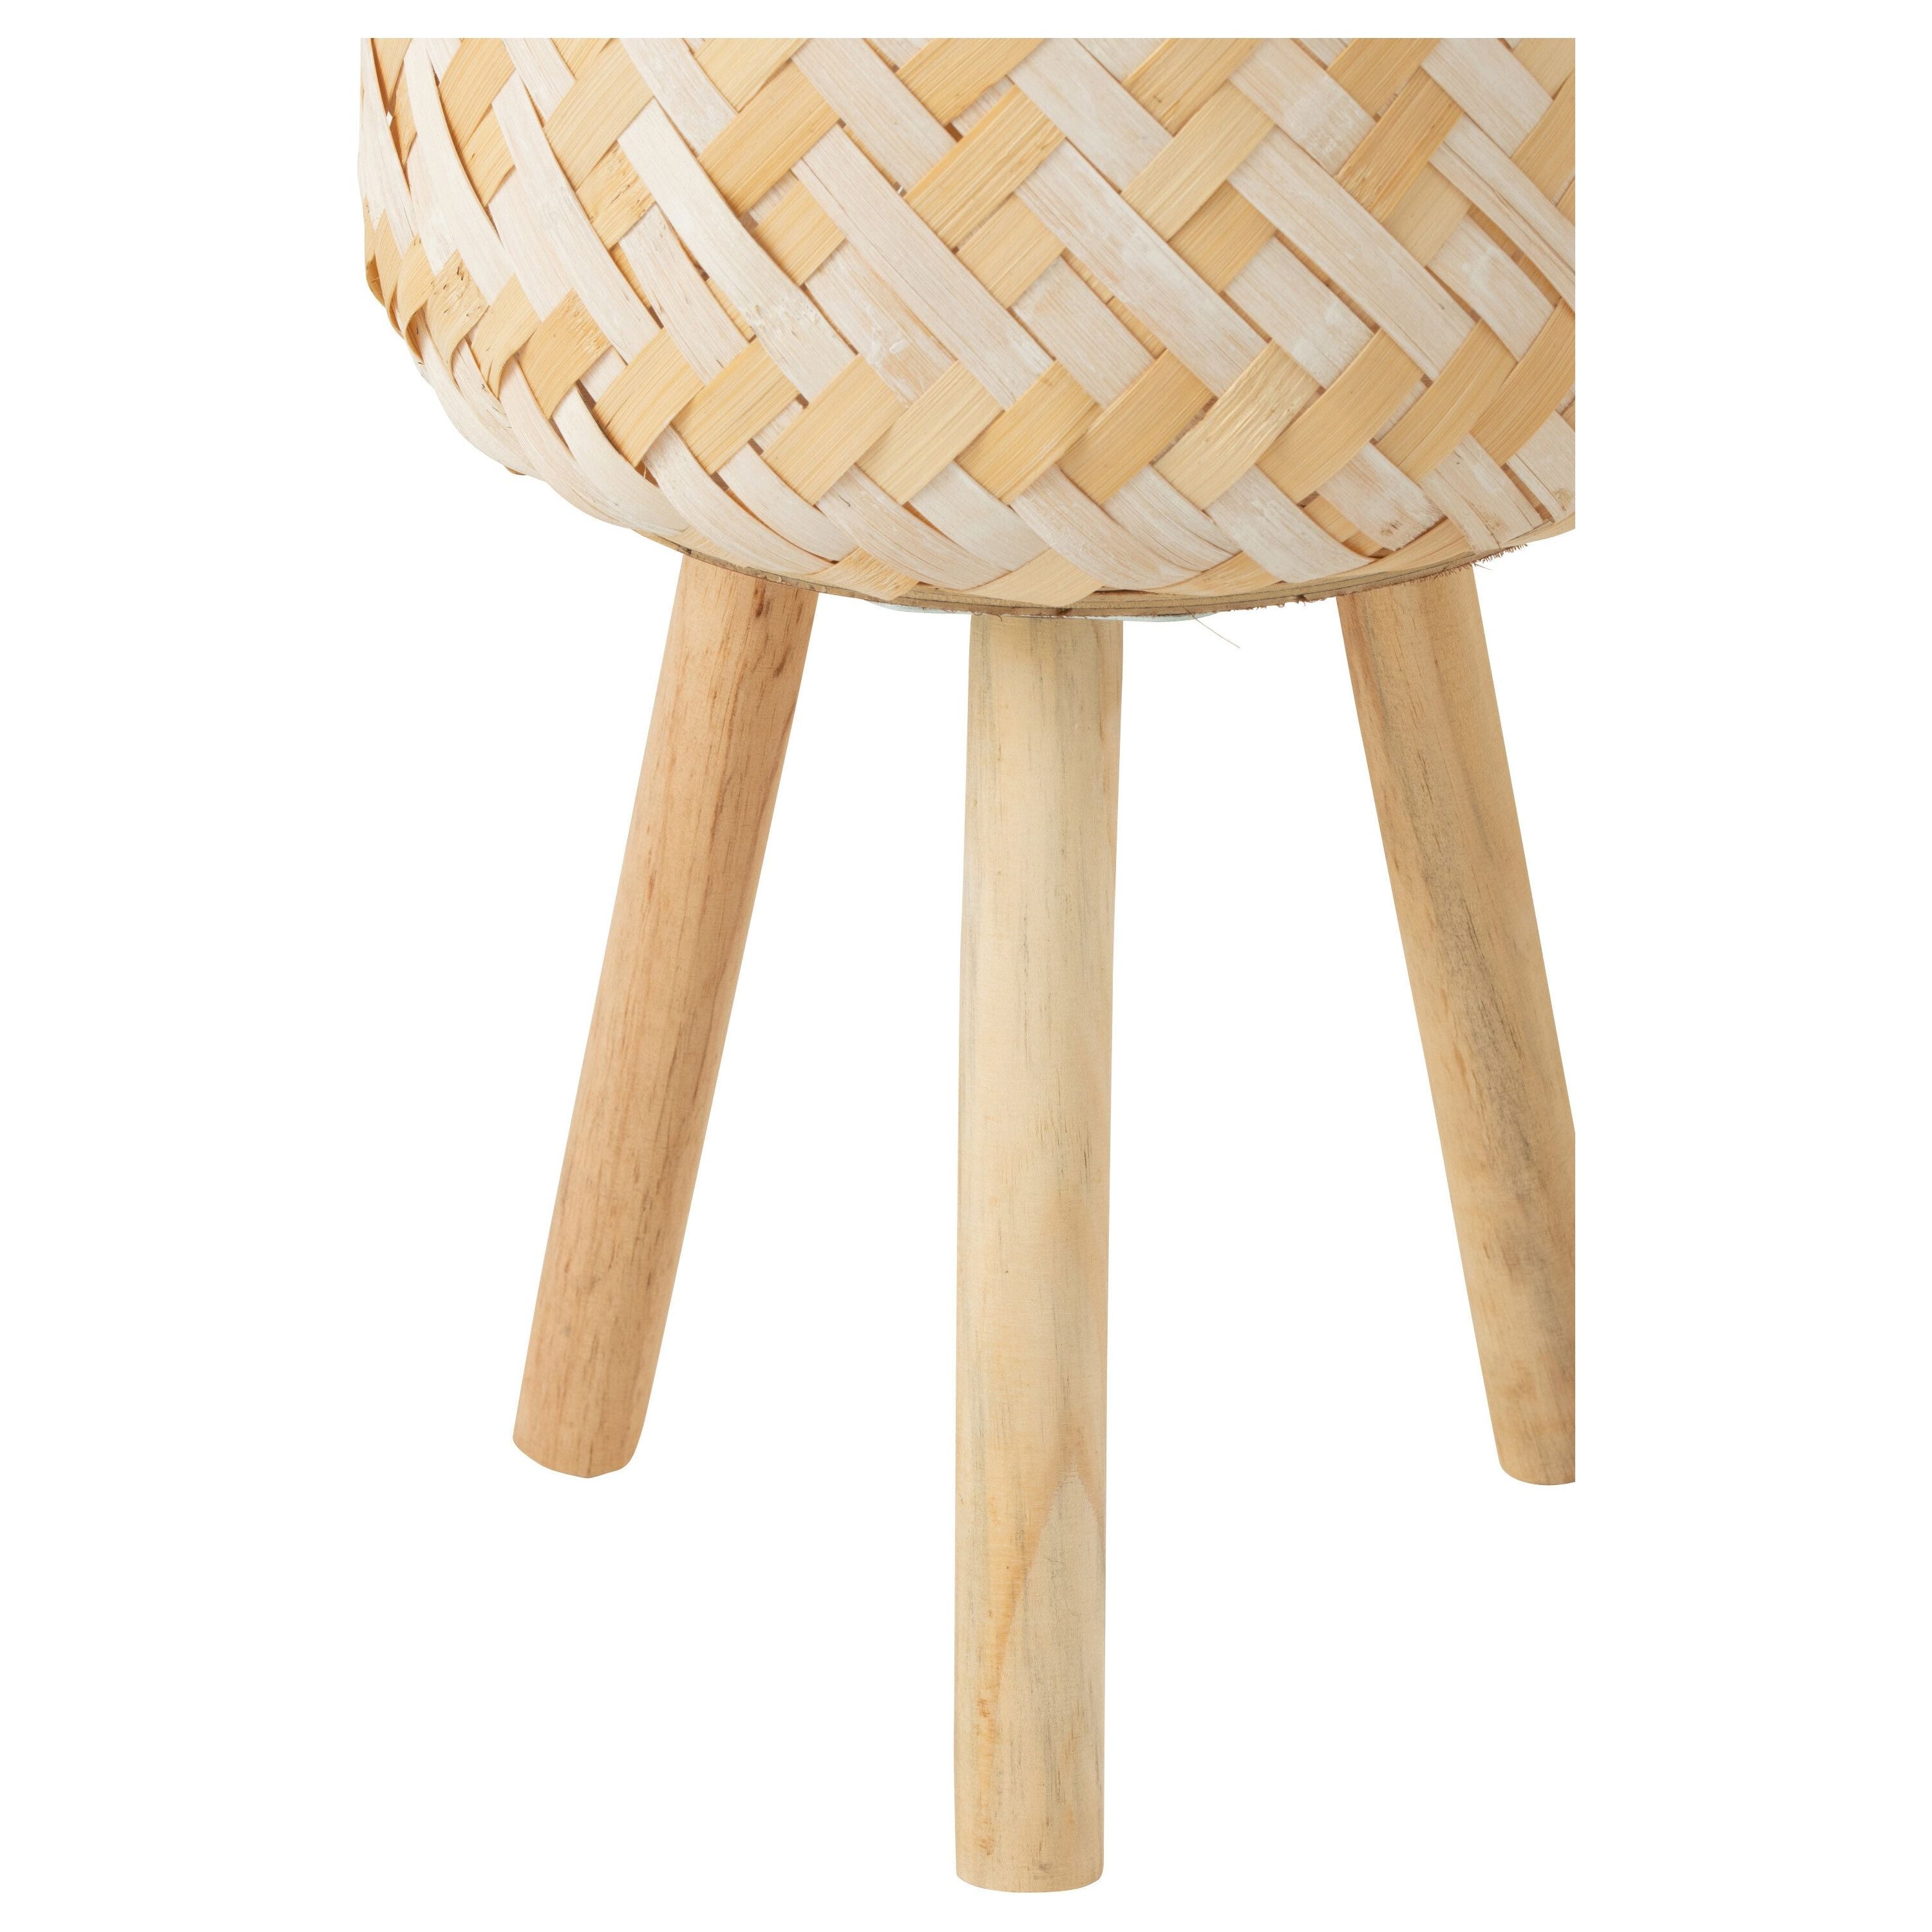 Basket Patterns 3 Legs Bamboo Natural/white